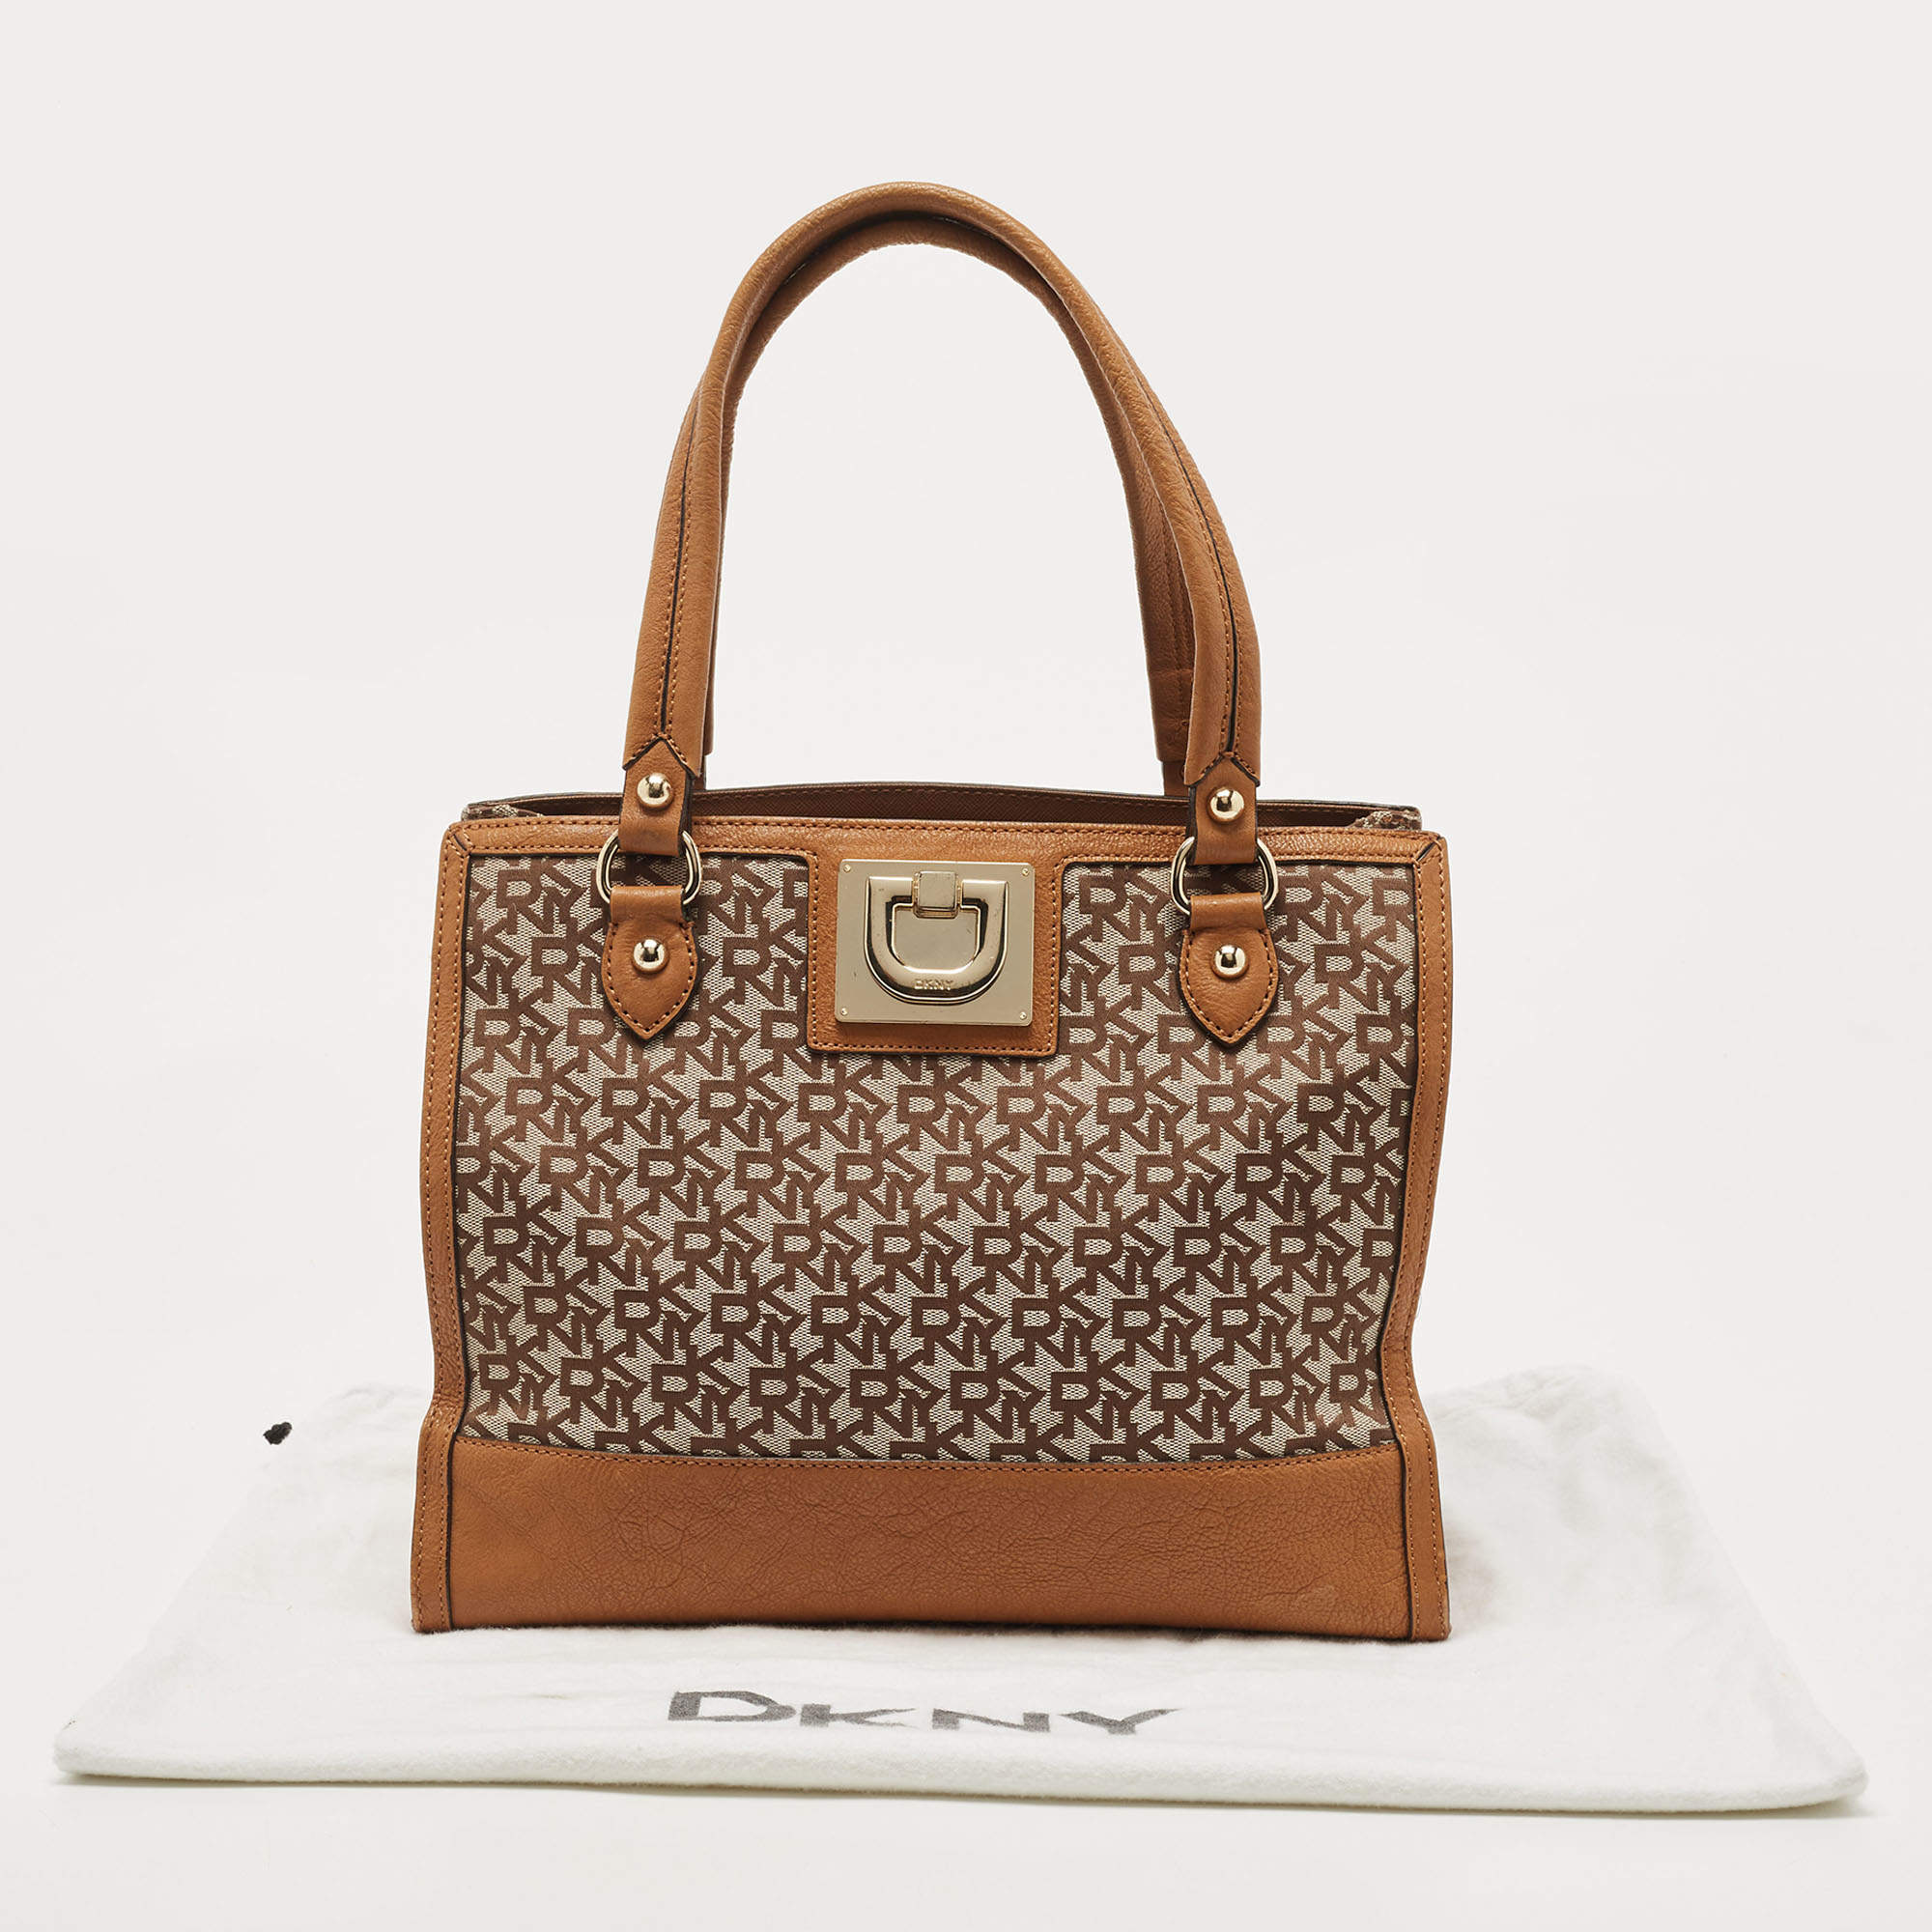 DKNY handbag  Dkny handbags, Dkny bag, Brown handbag